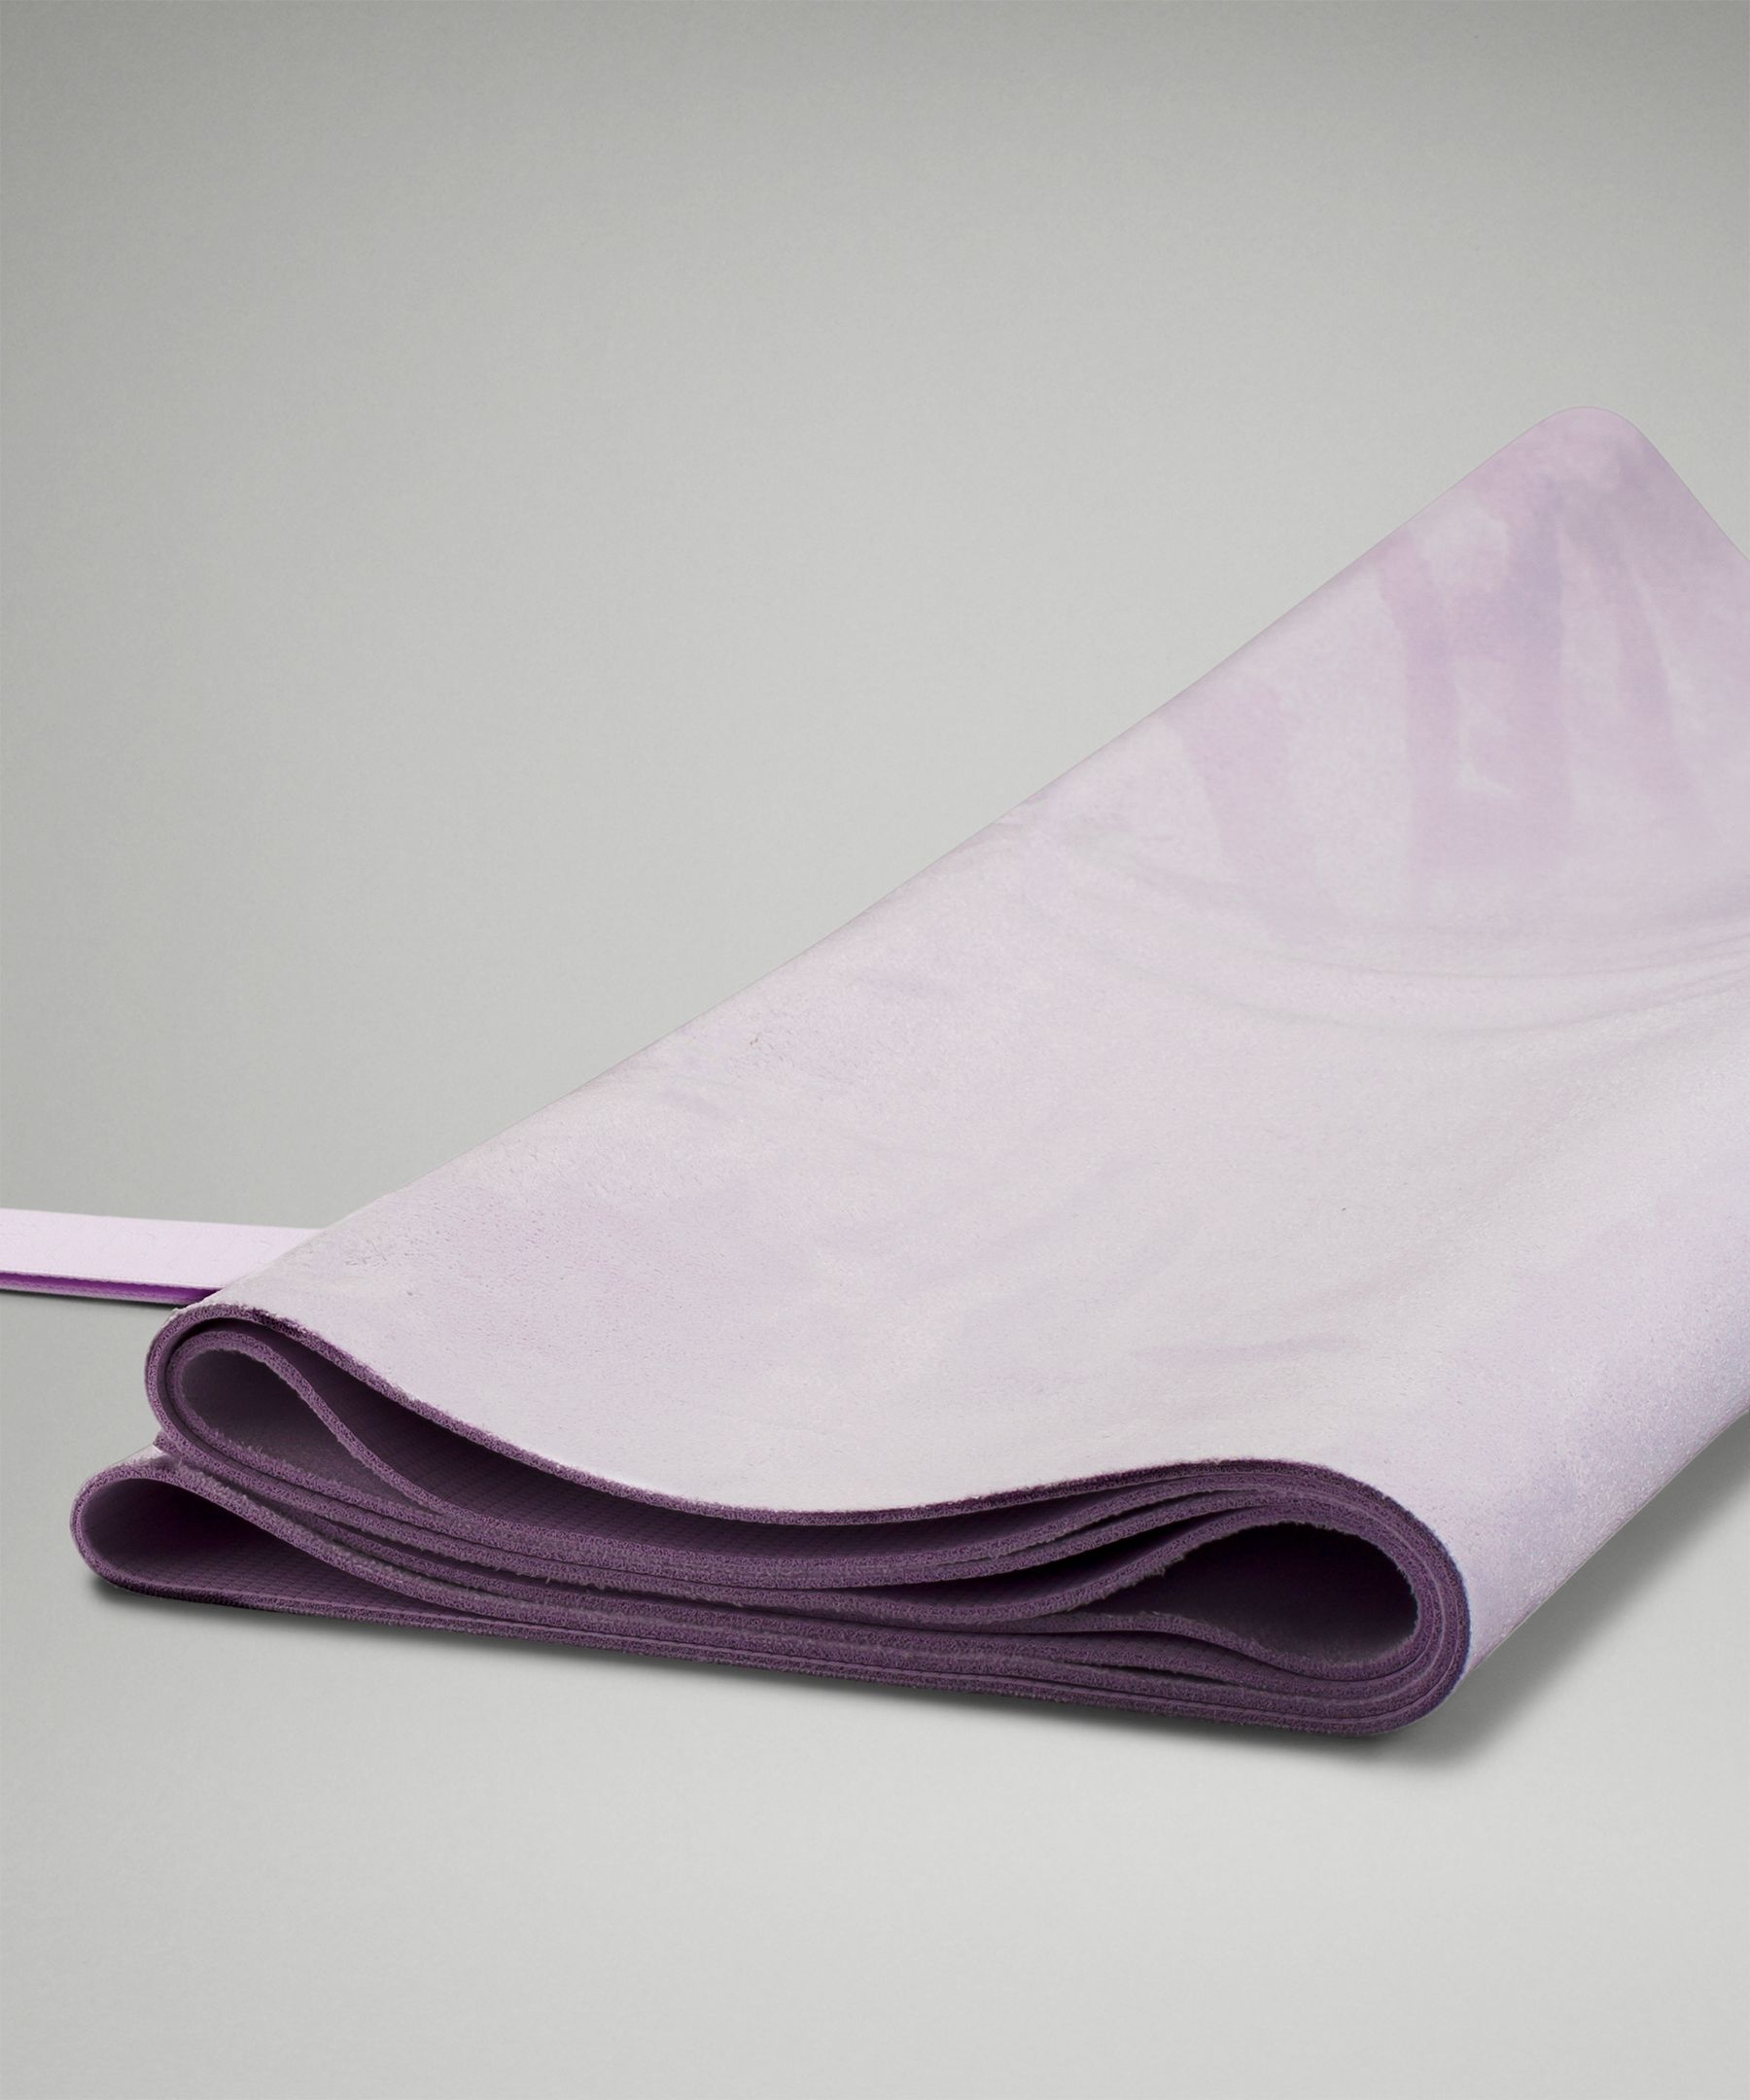 Jual Preloved Matras Yoga Lululemon Carry onwards Mat - Purple Foldable -  Jakarta Selatan - Impulsive_mama